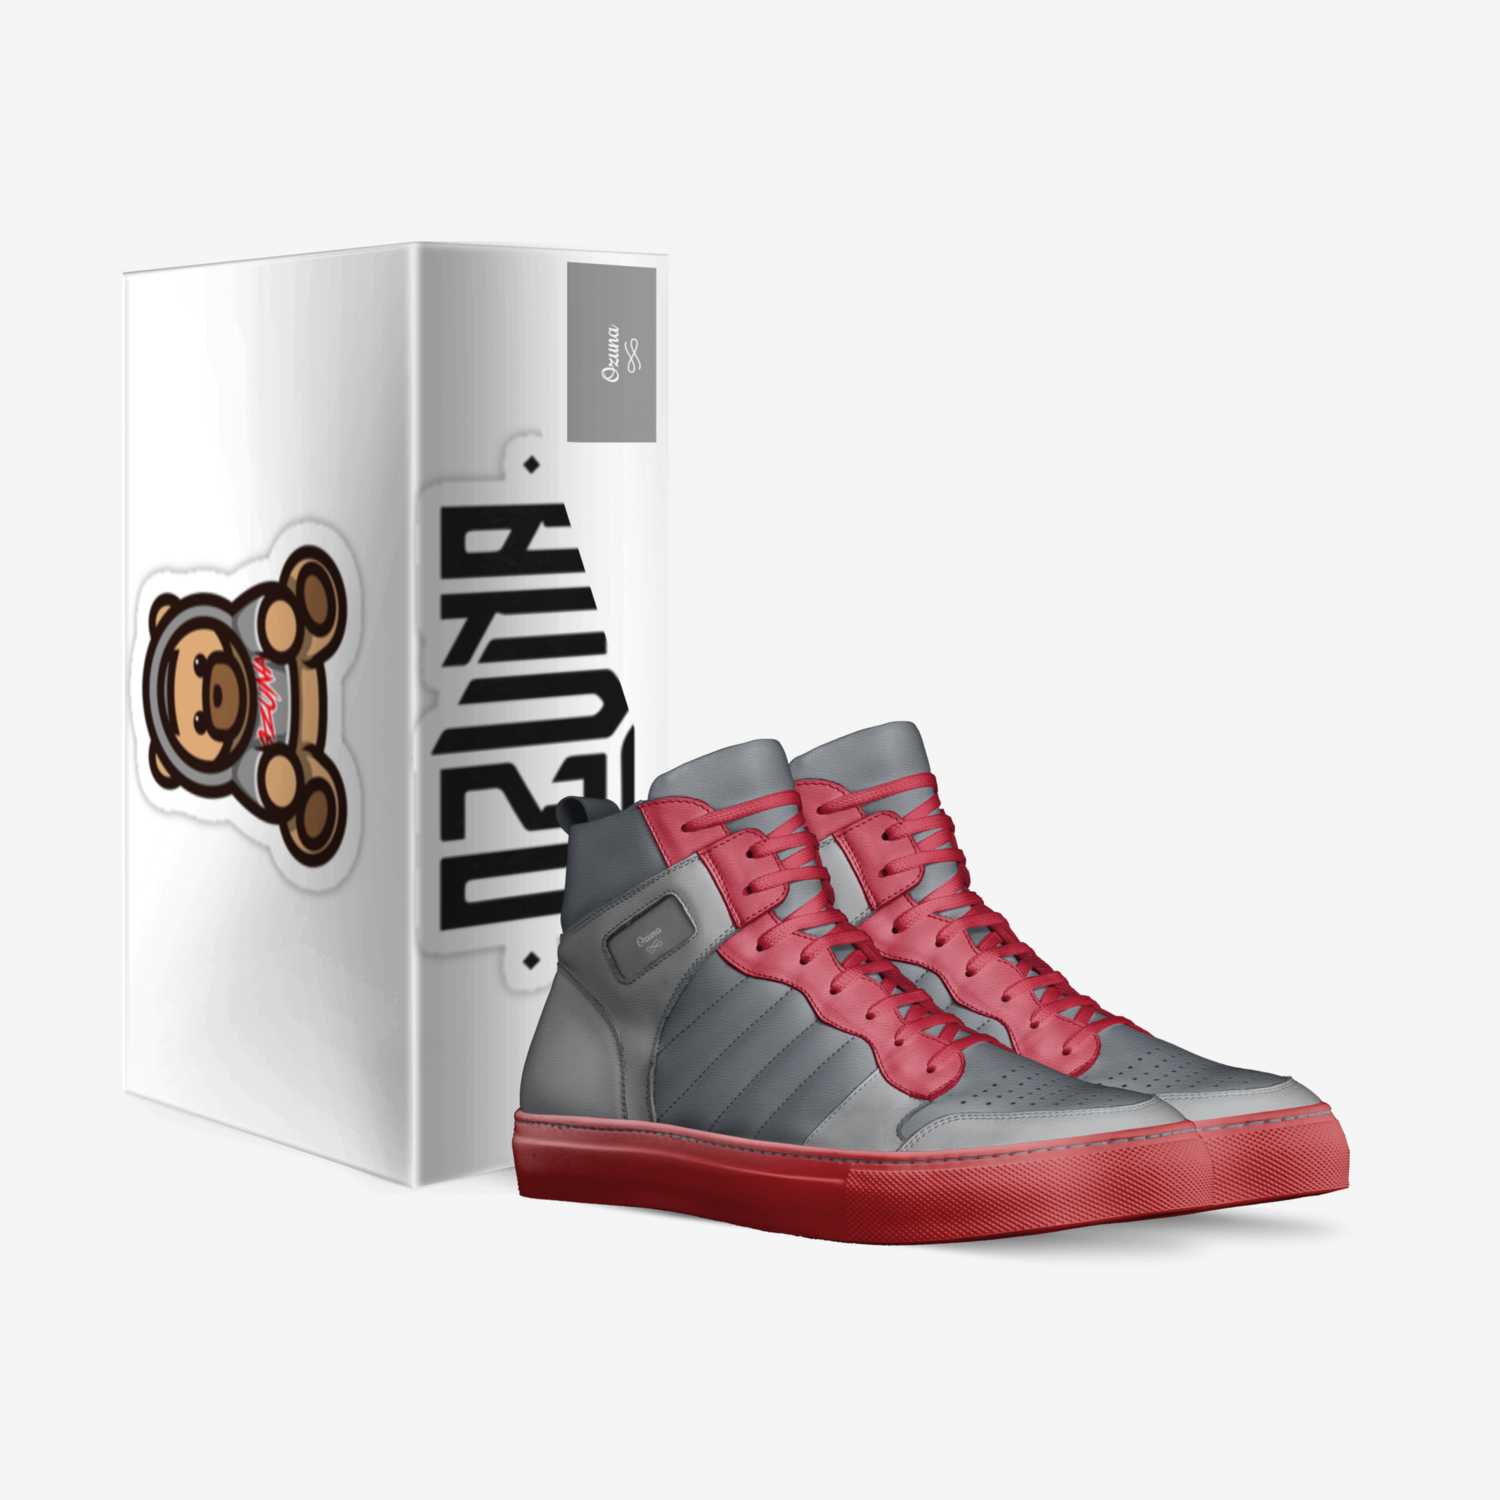 Ozuna custom made in Italy shoes by Jelaciojonguitud | Box view